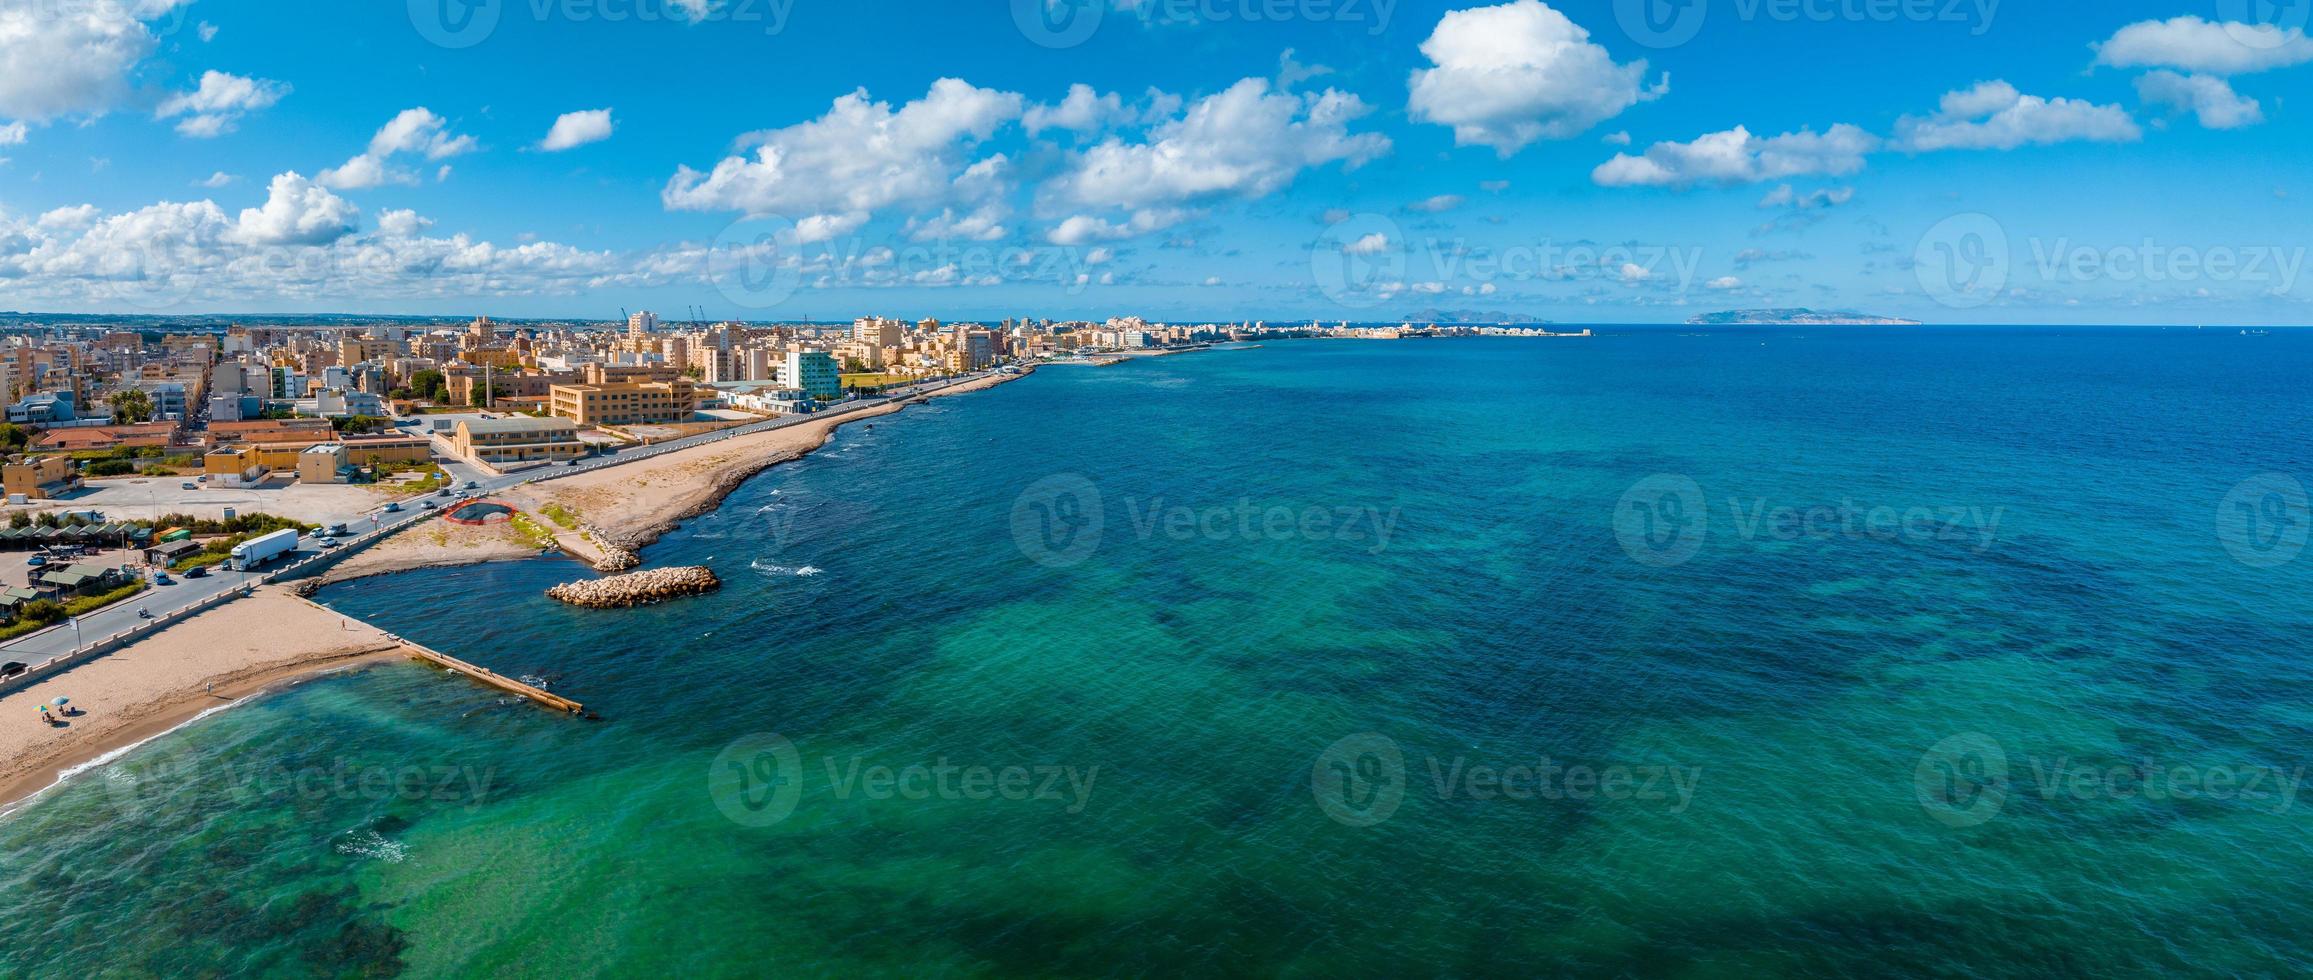 aereo panoramico Visualizza di trapani porto, sicilia, Italia. foto